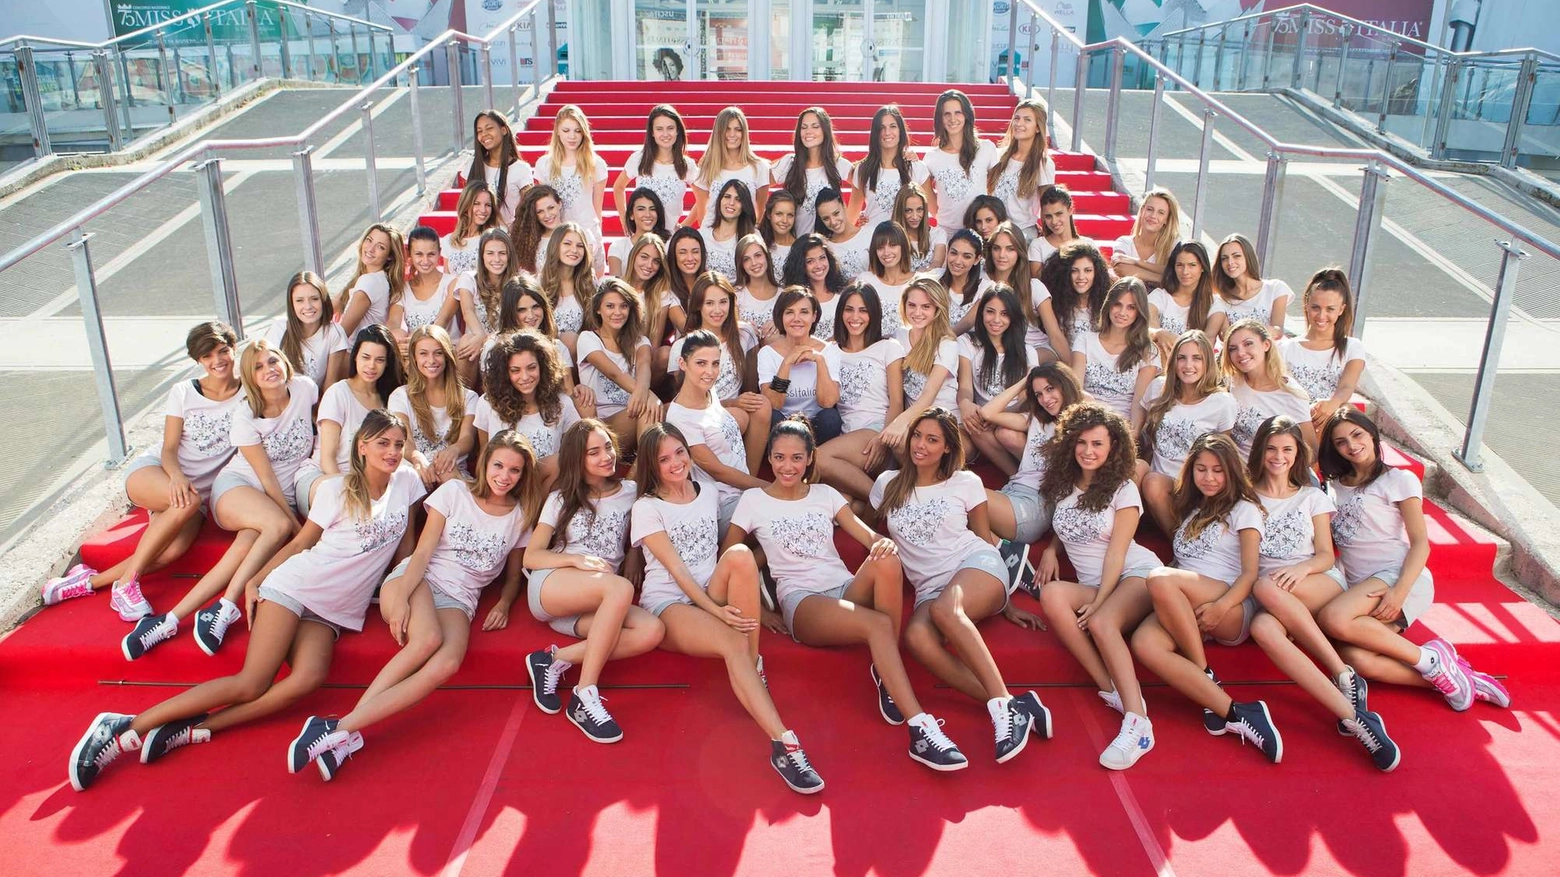 Le sessanta partecipanti a Miss Italia 2014